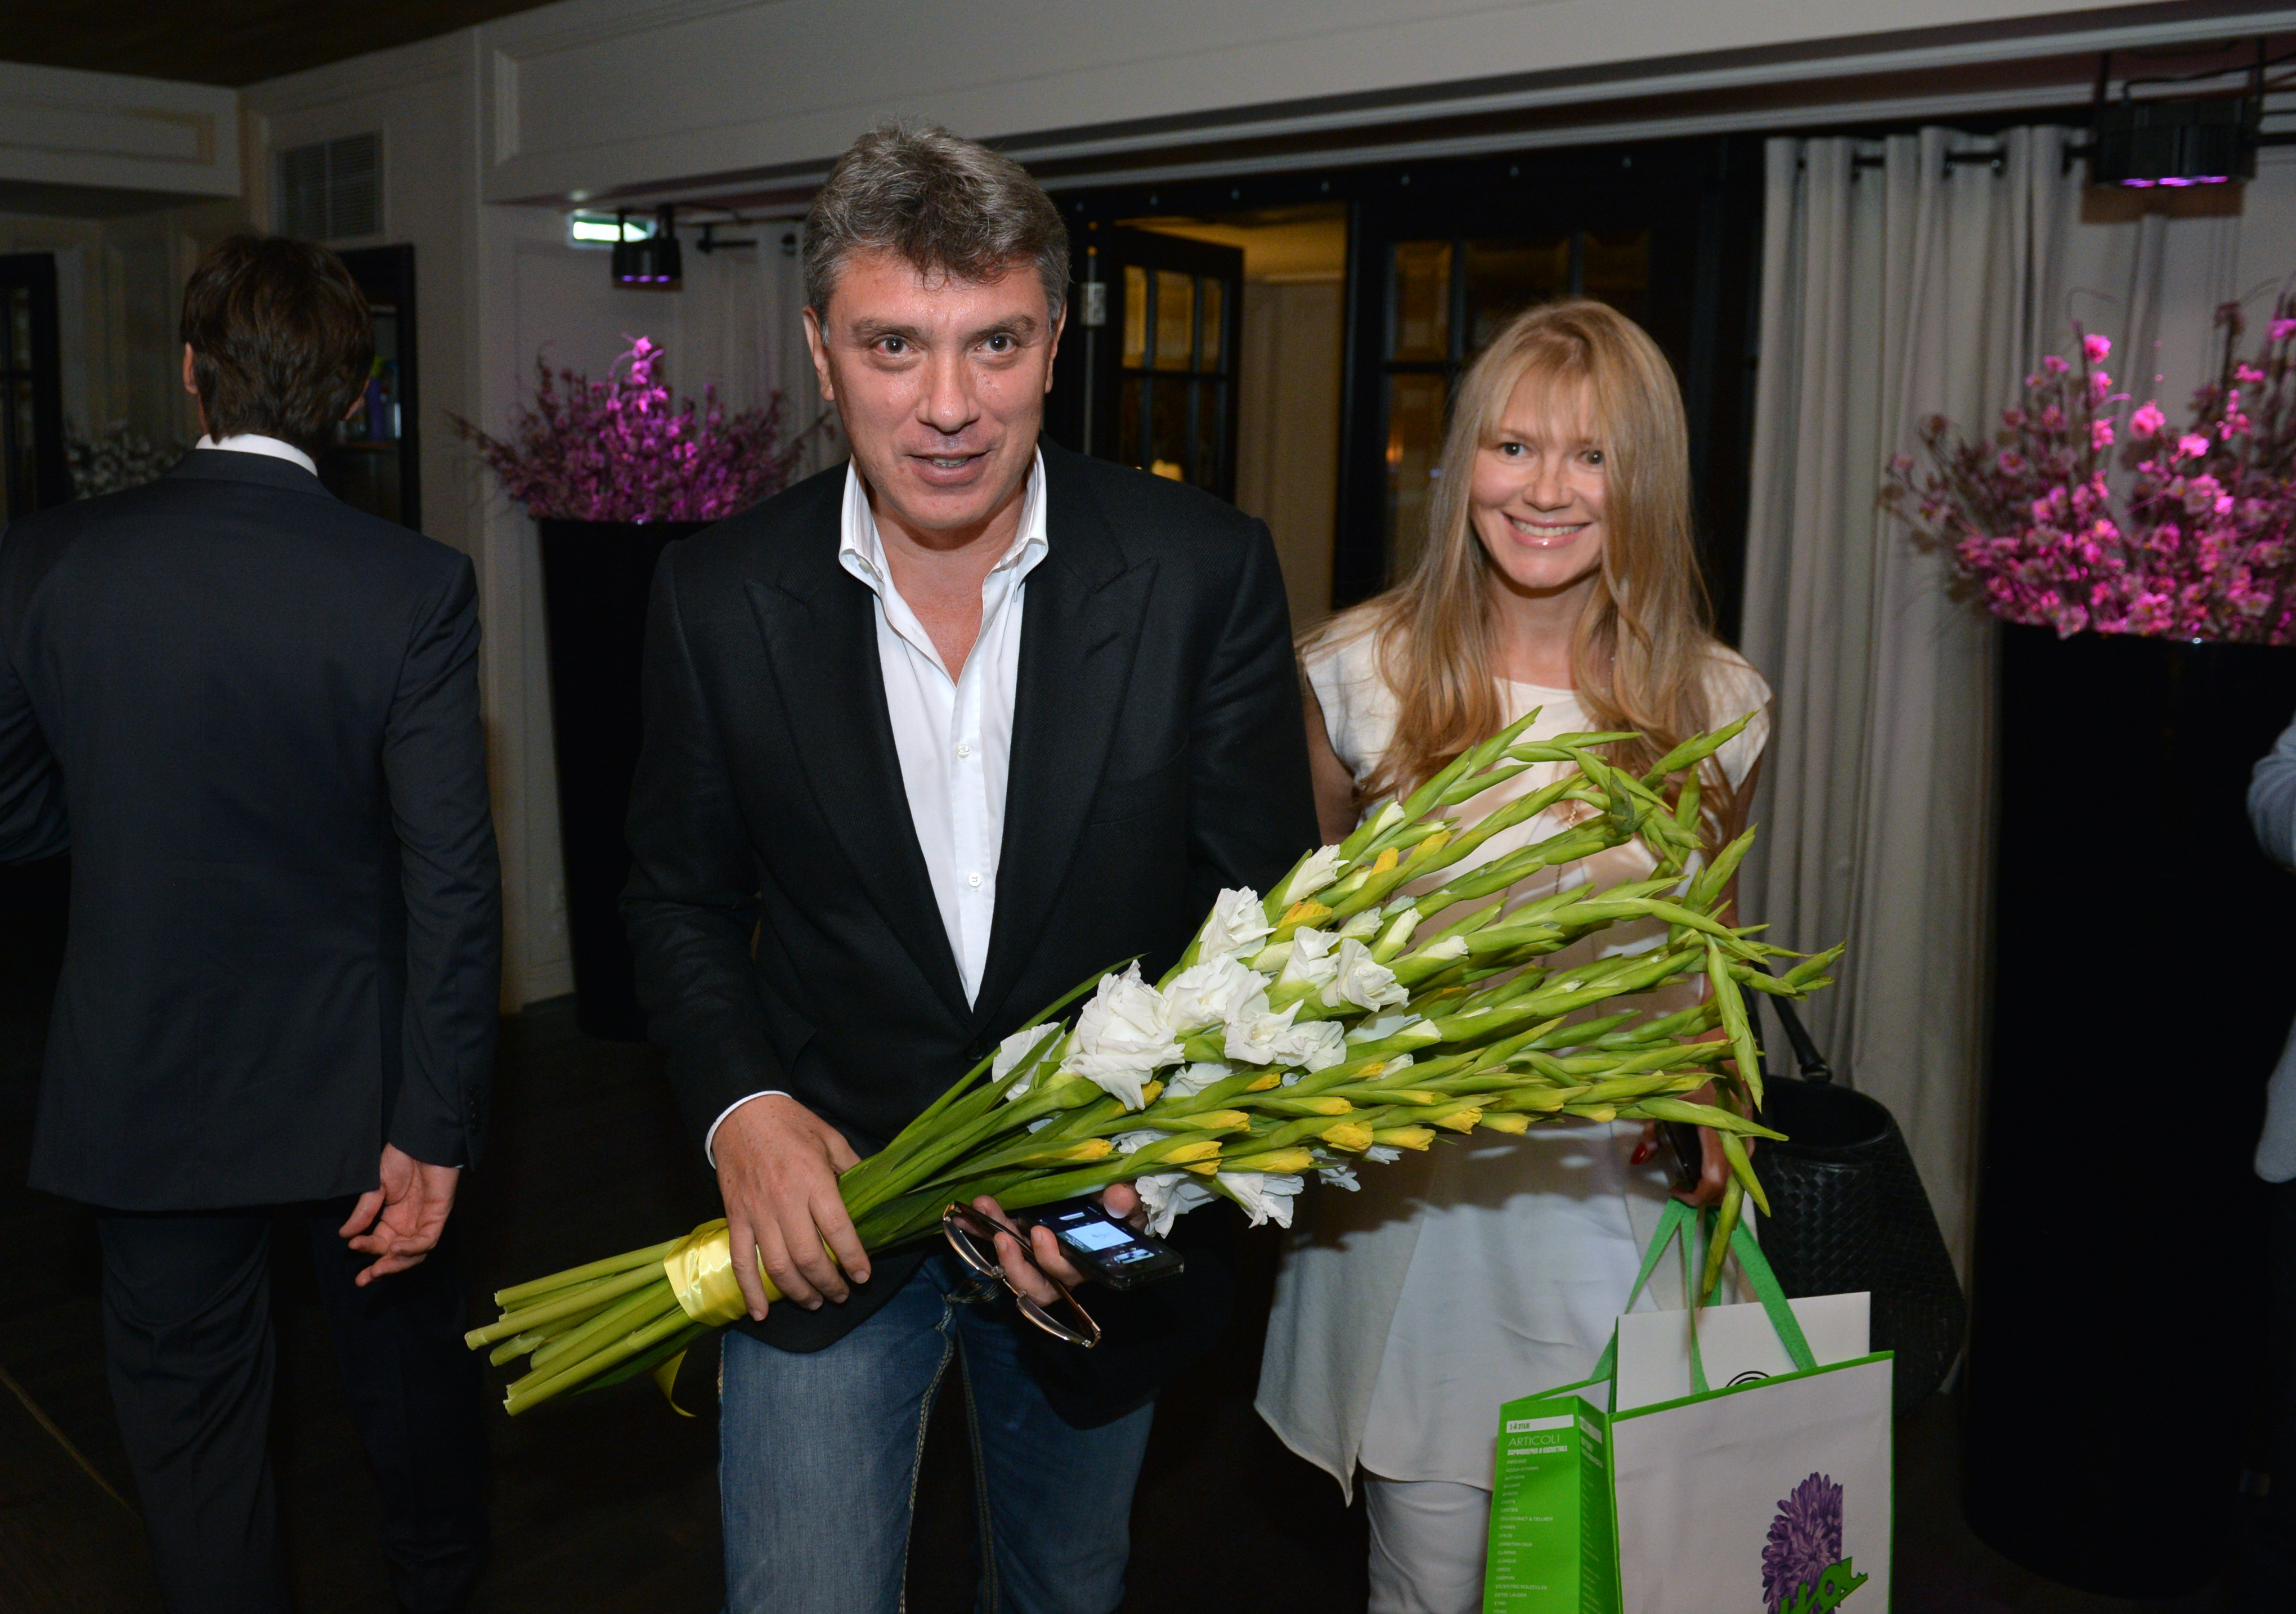 Ближе к ночи на праздник прибыл и политический деятель Борис Немцов, появившийся с матерью своей 10-летней дочери Сони &mdash; Ириной Королевой